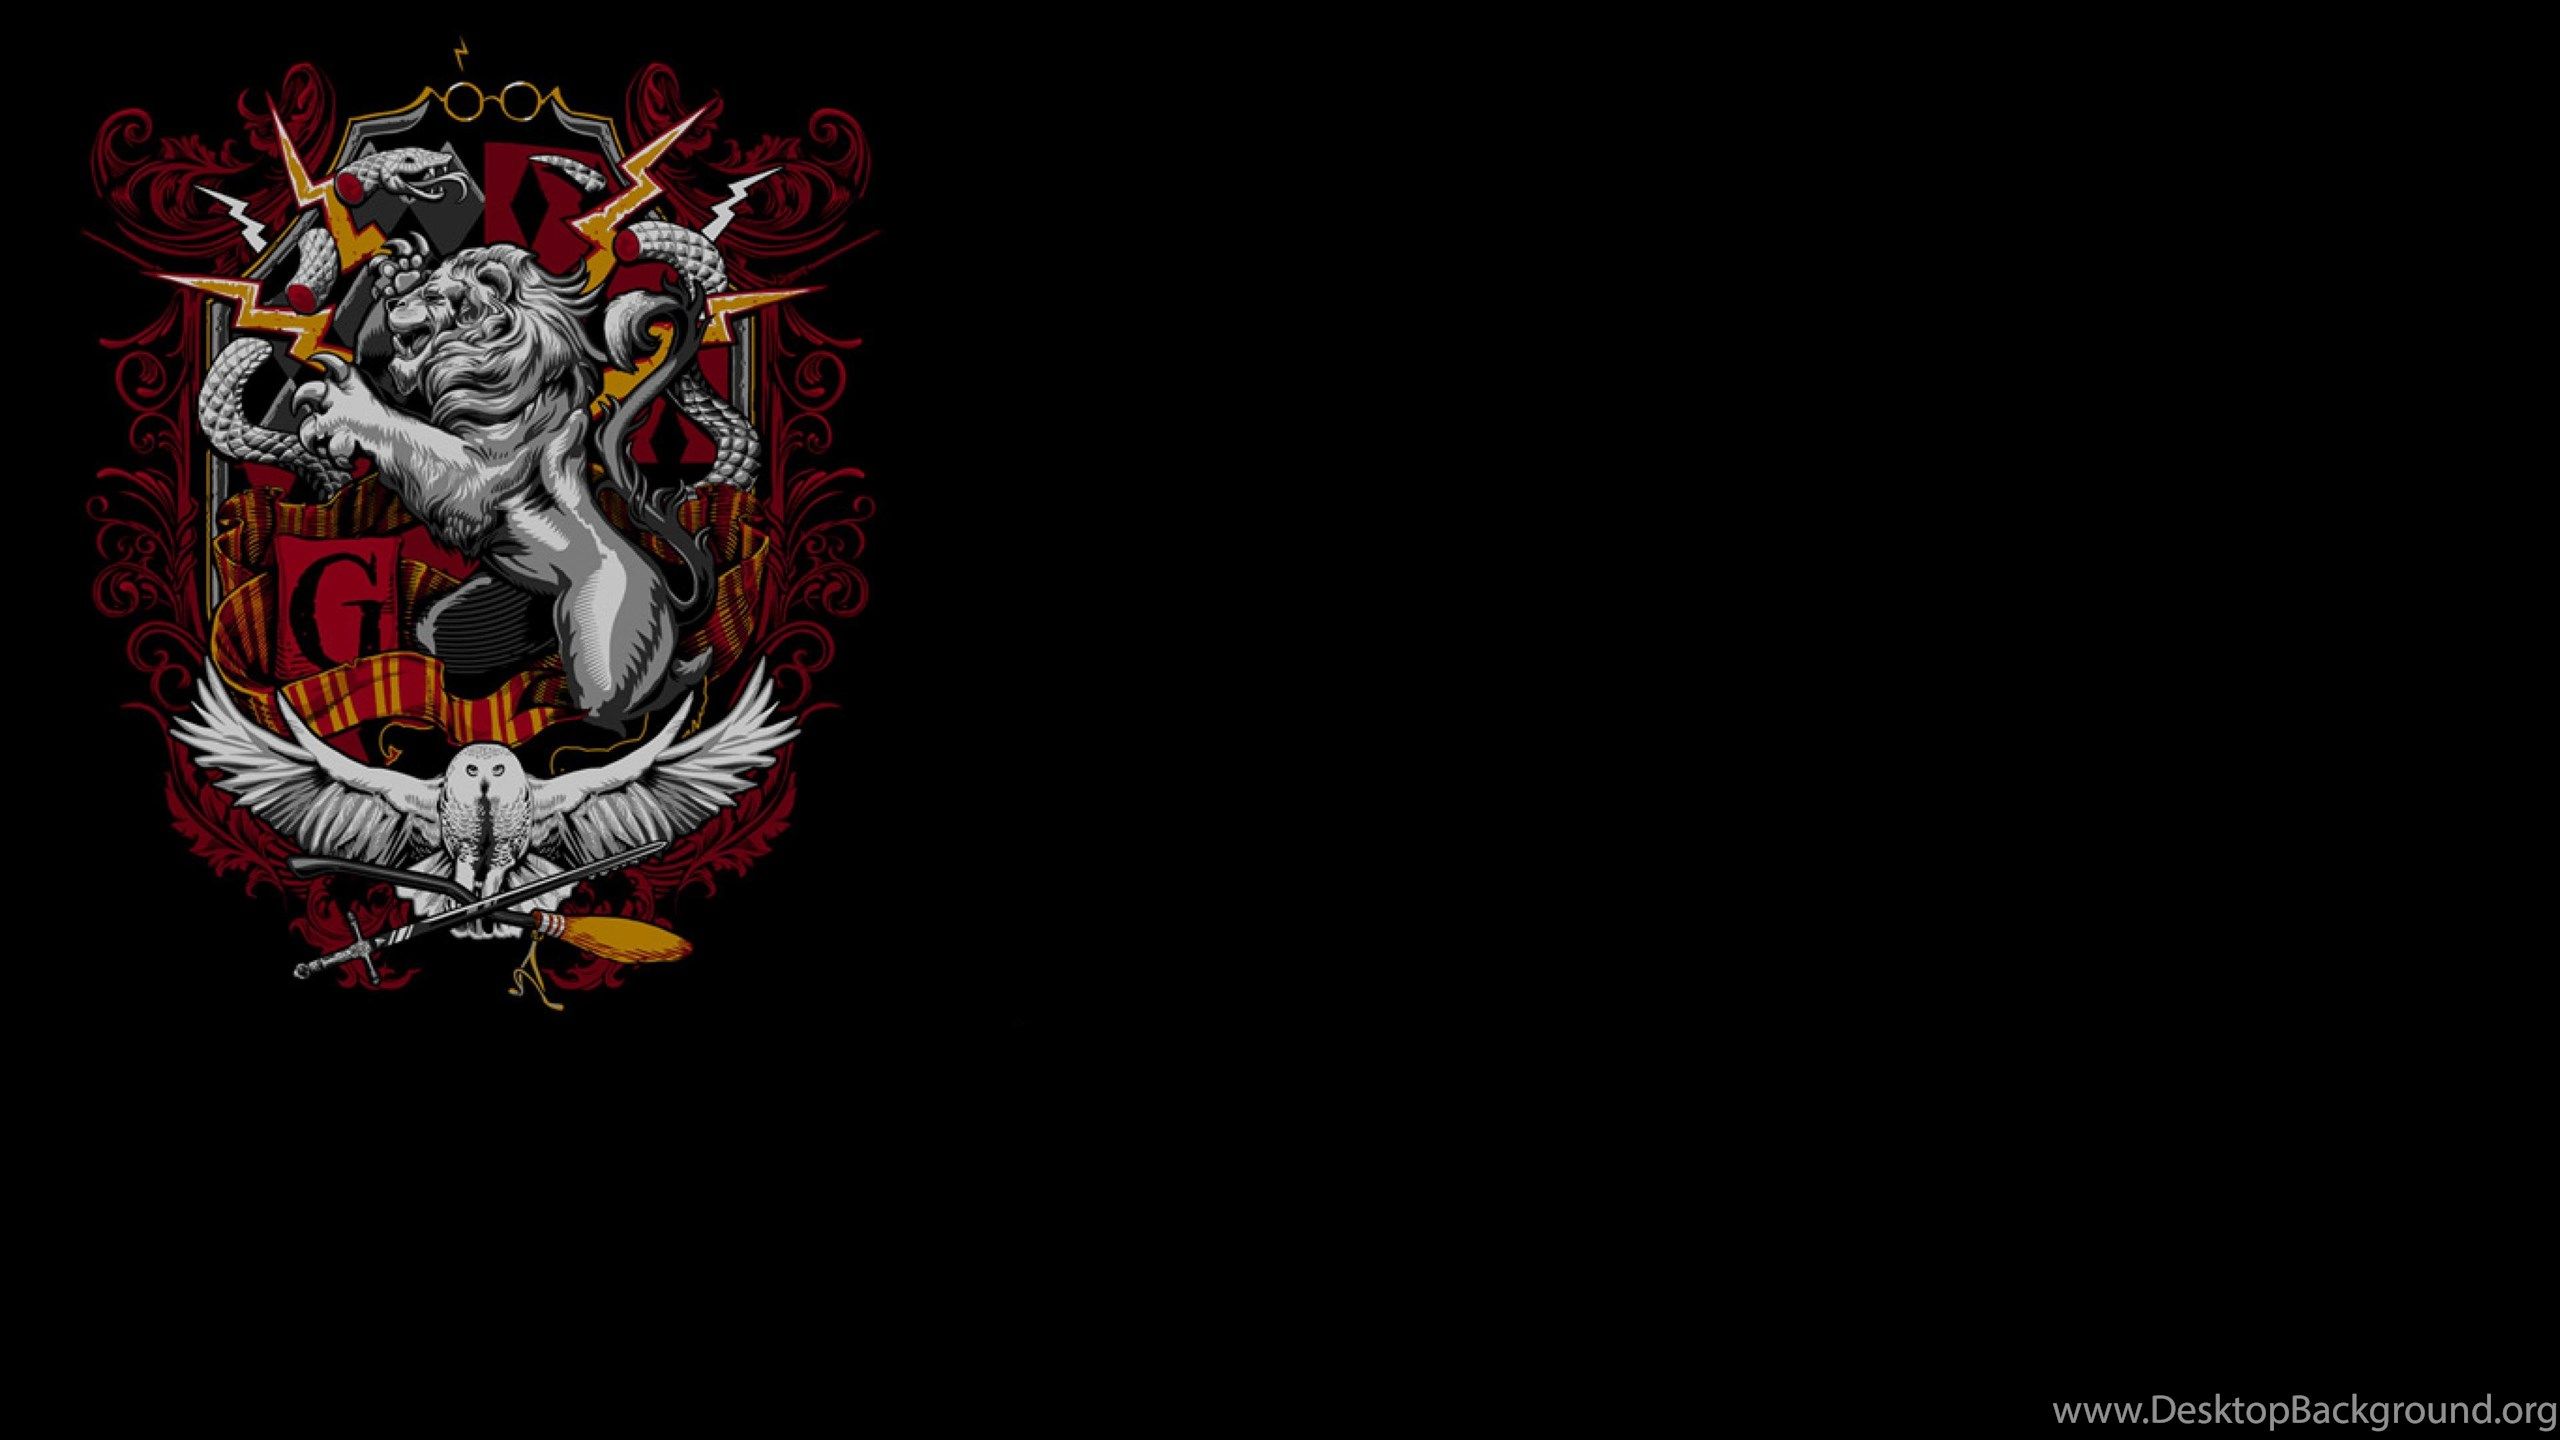 Harry Potter Crest Hufflepuff Gryffindor Hogwarts Slytherin. Desktop Background